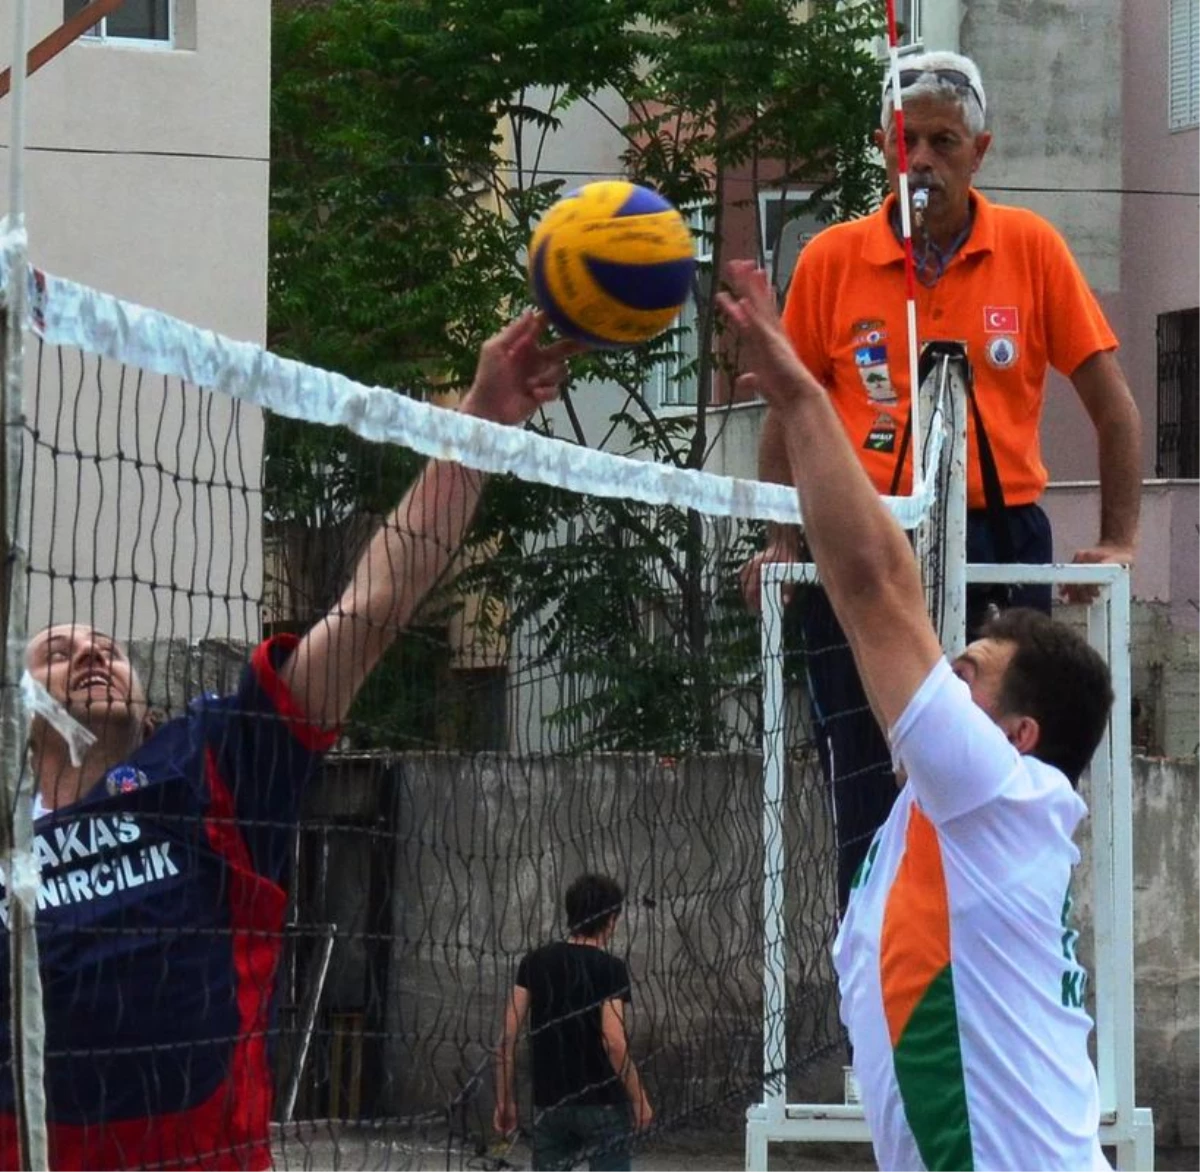 Lapseki Kaymakamlığı Bahar Kupası Voleybol Turnuvası" Sona Erdi